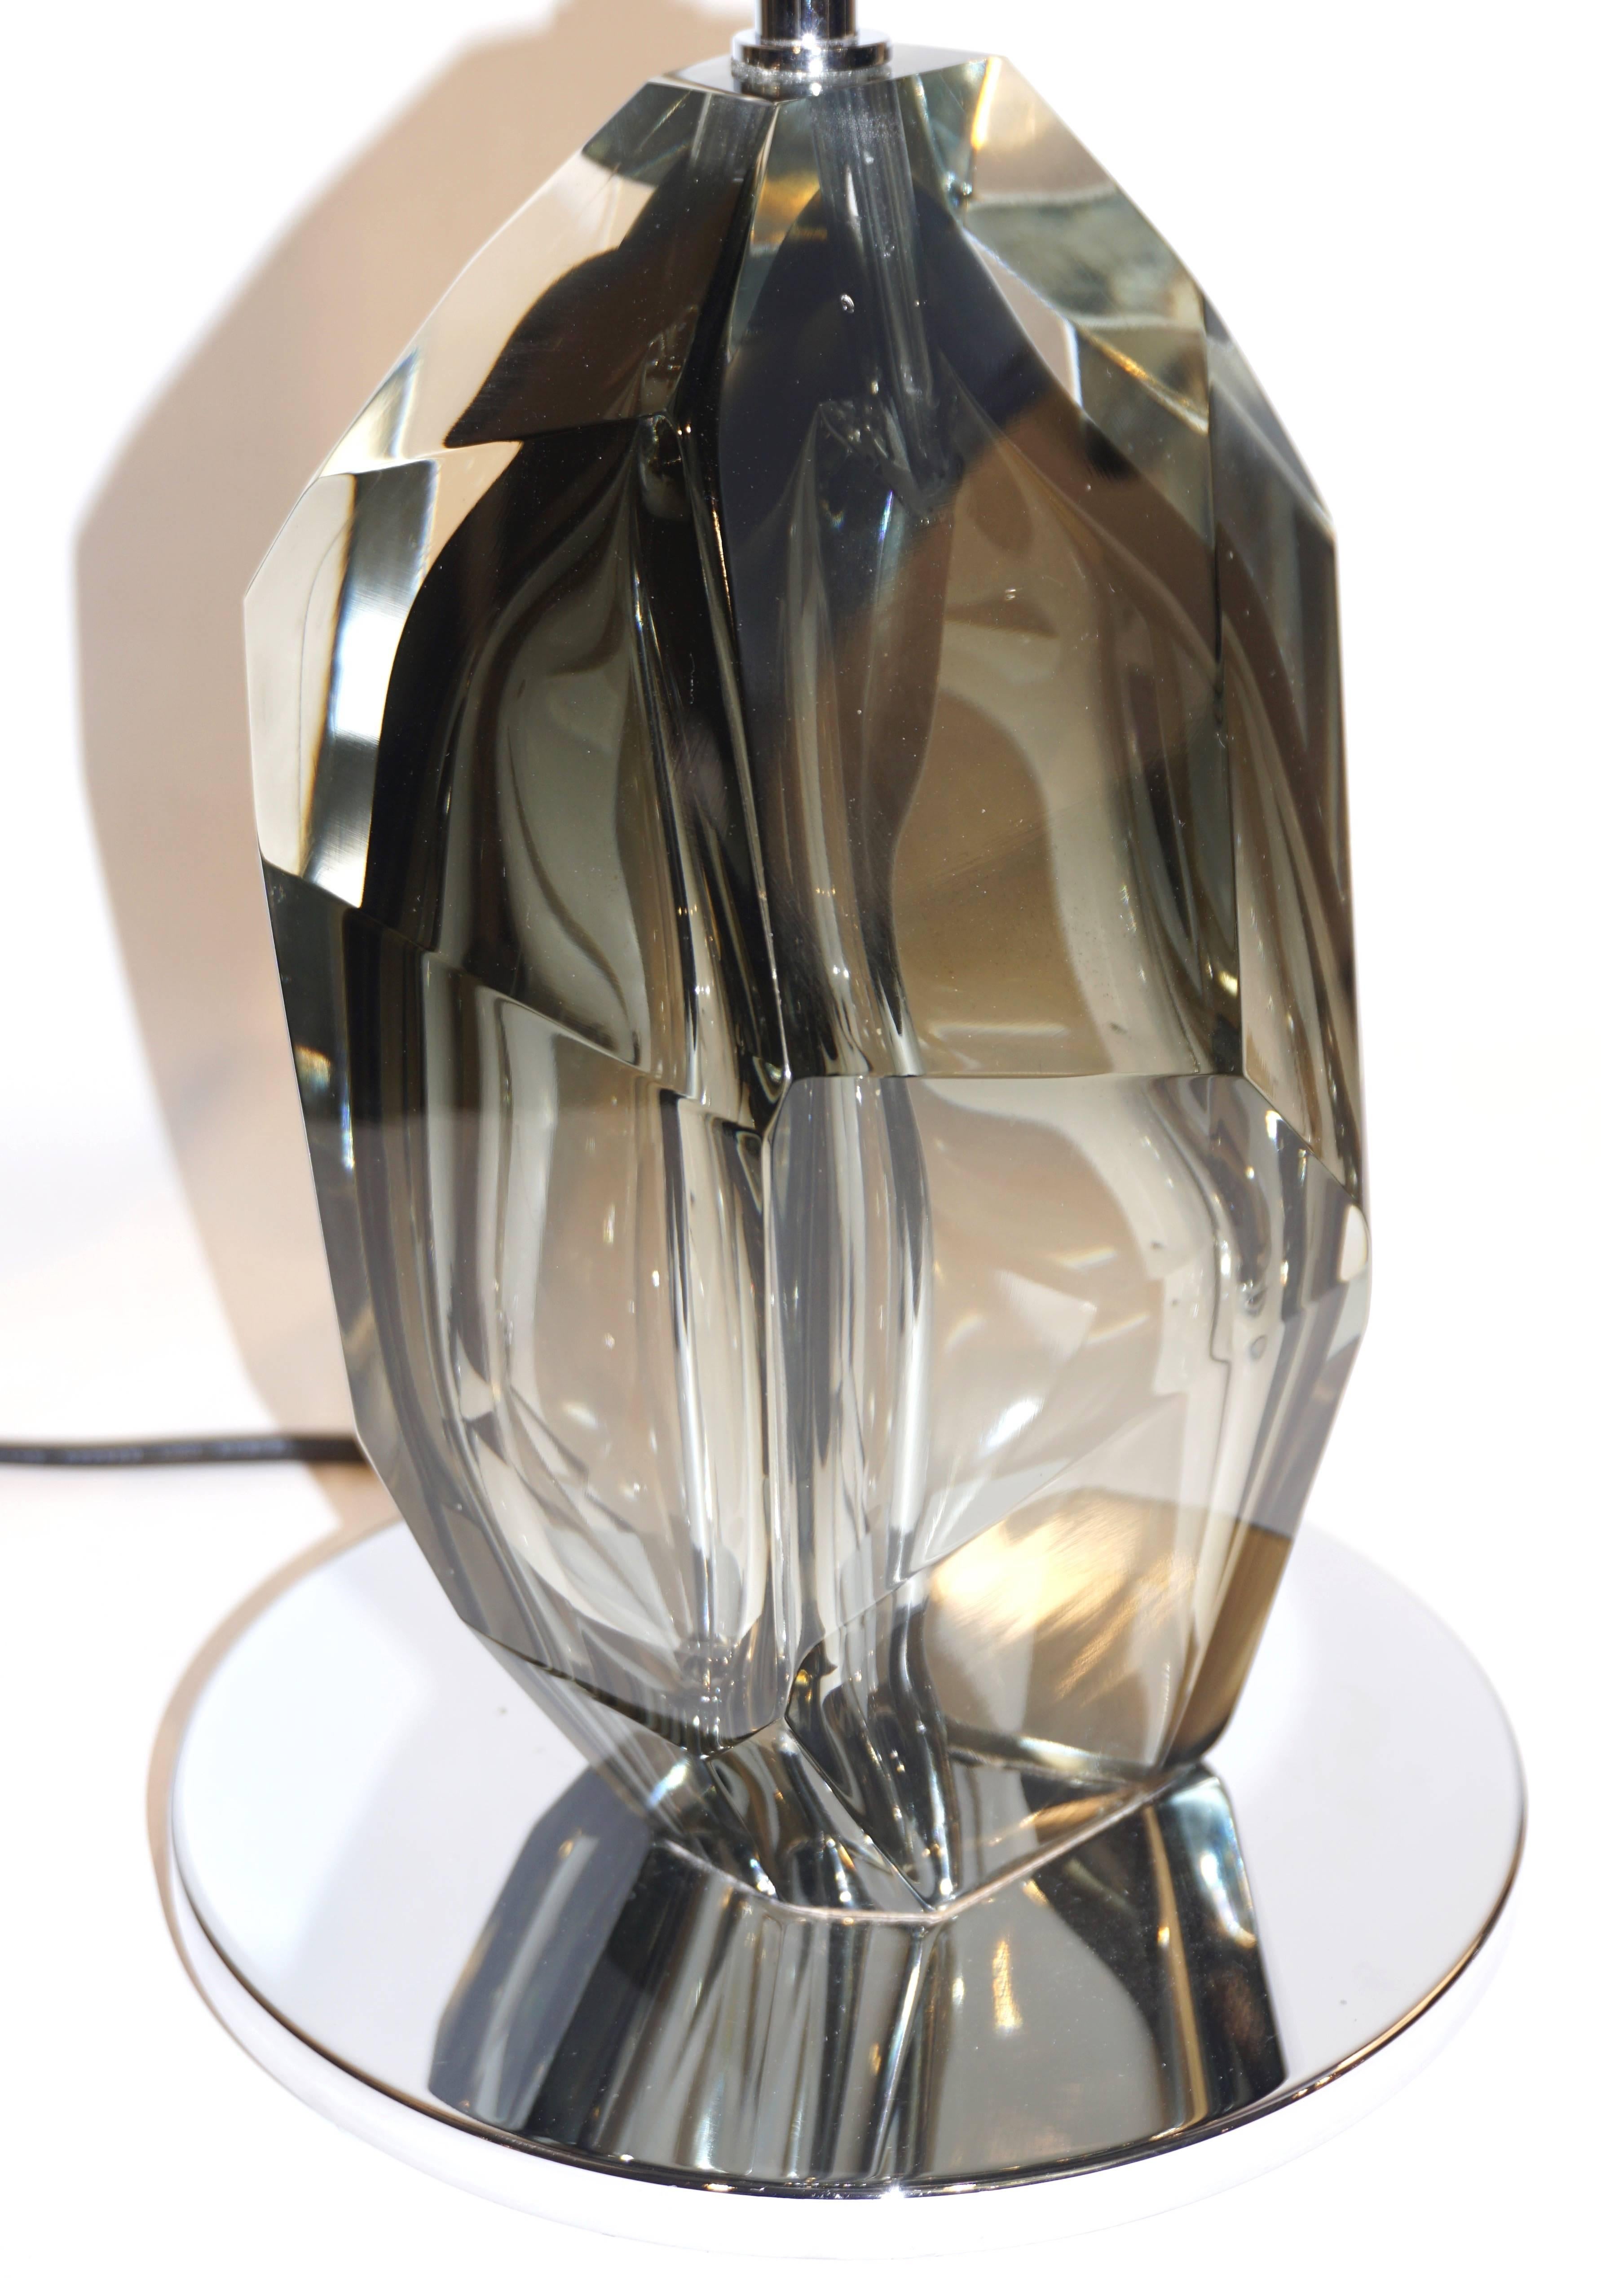 Lampe de table contemporaine made in Italy signée par Alberto Donà Studio de design organique, de haute qualité d'exécution, entièrement réalisée et polie à la main, le lourd corps en verre massif de Murano dans une teinte sophistiquée de verre fumé